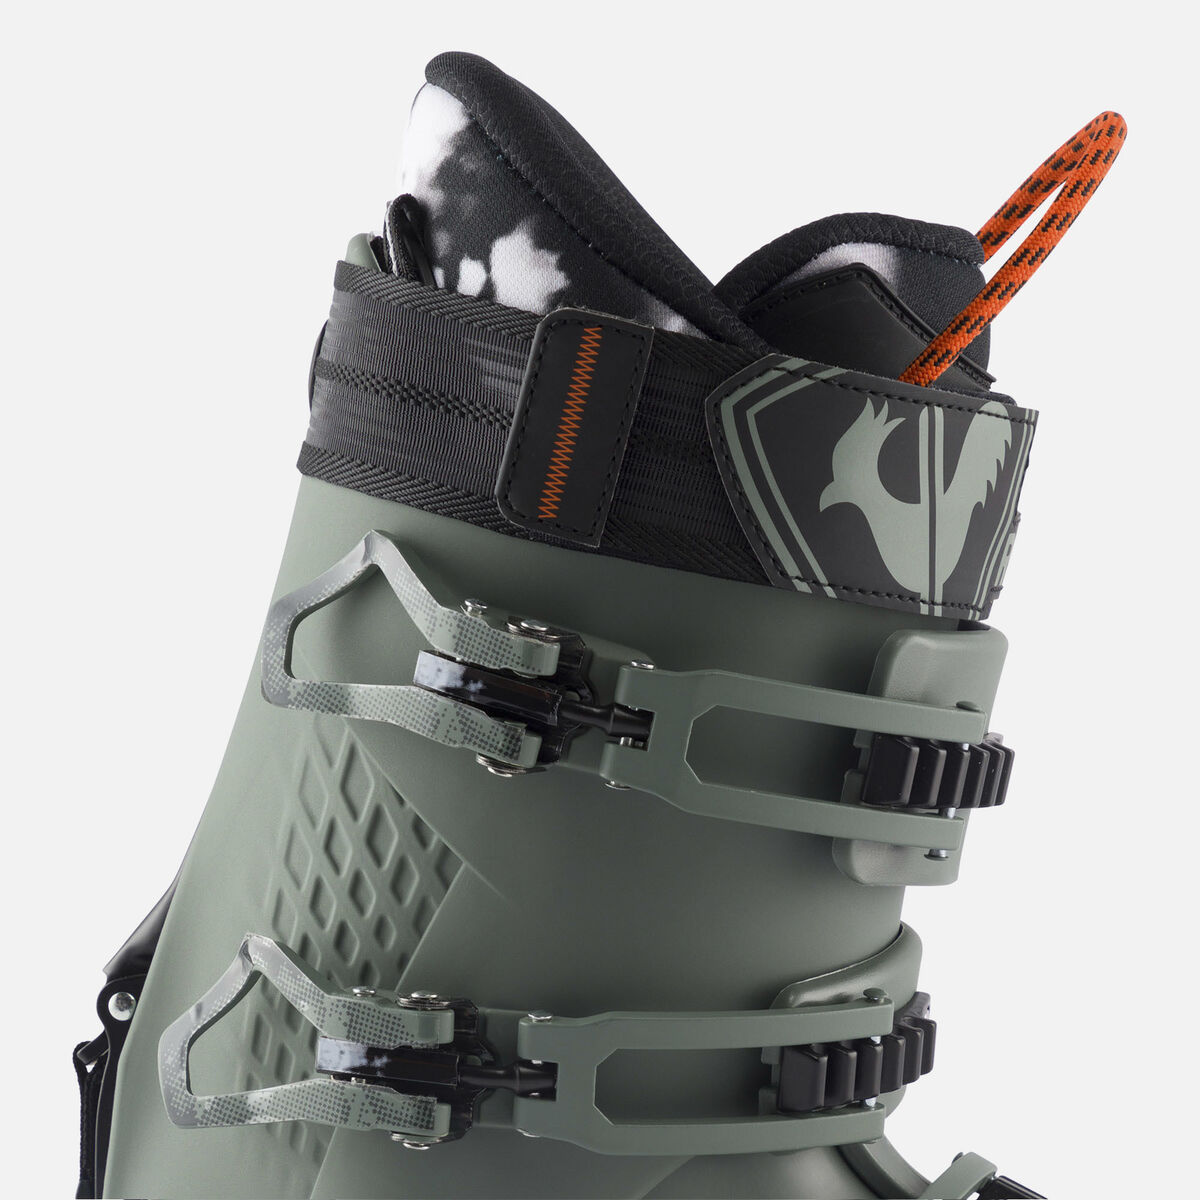 Chaussures de ski All Mountain homme Alltrack 130 HV GW